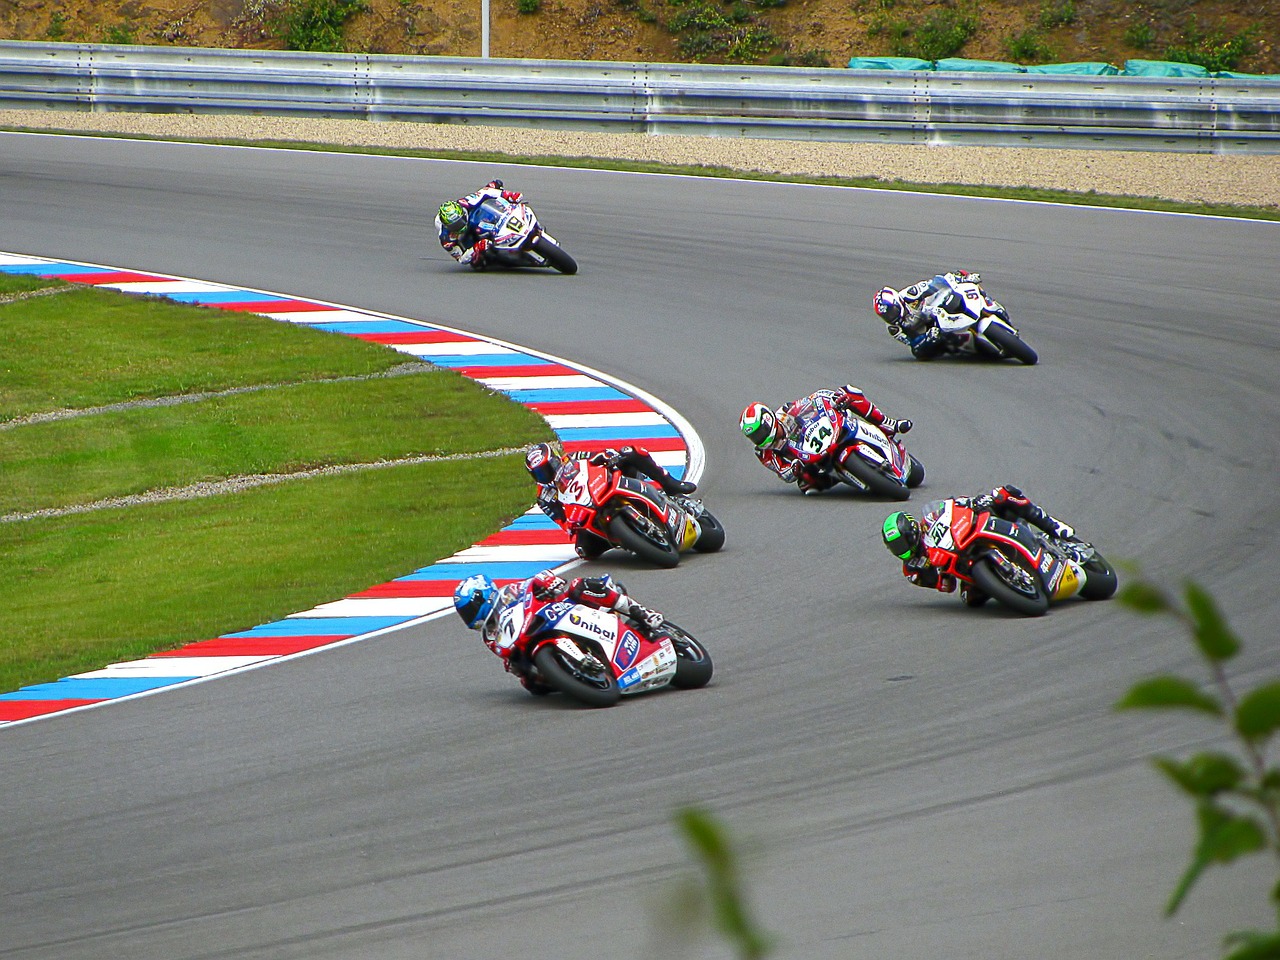 racing racing motorcycle racing bike free photo